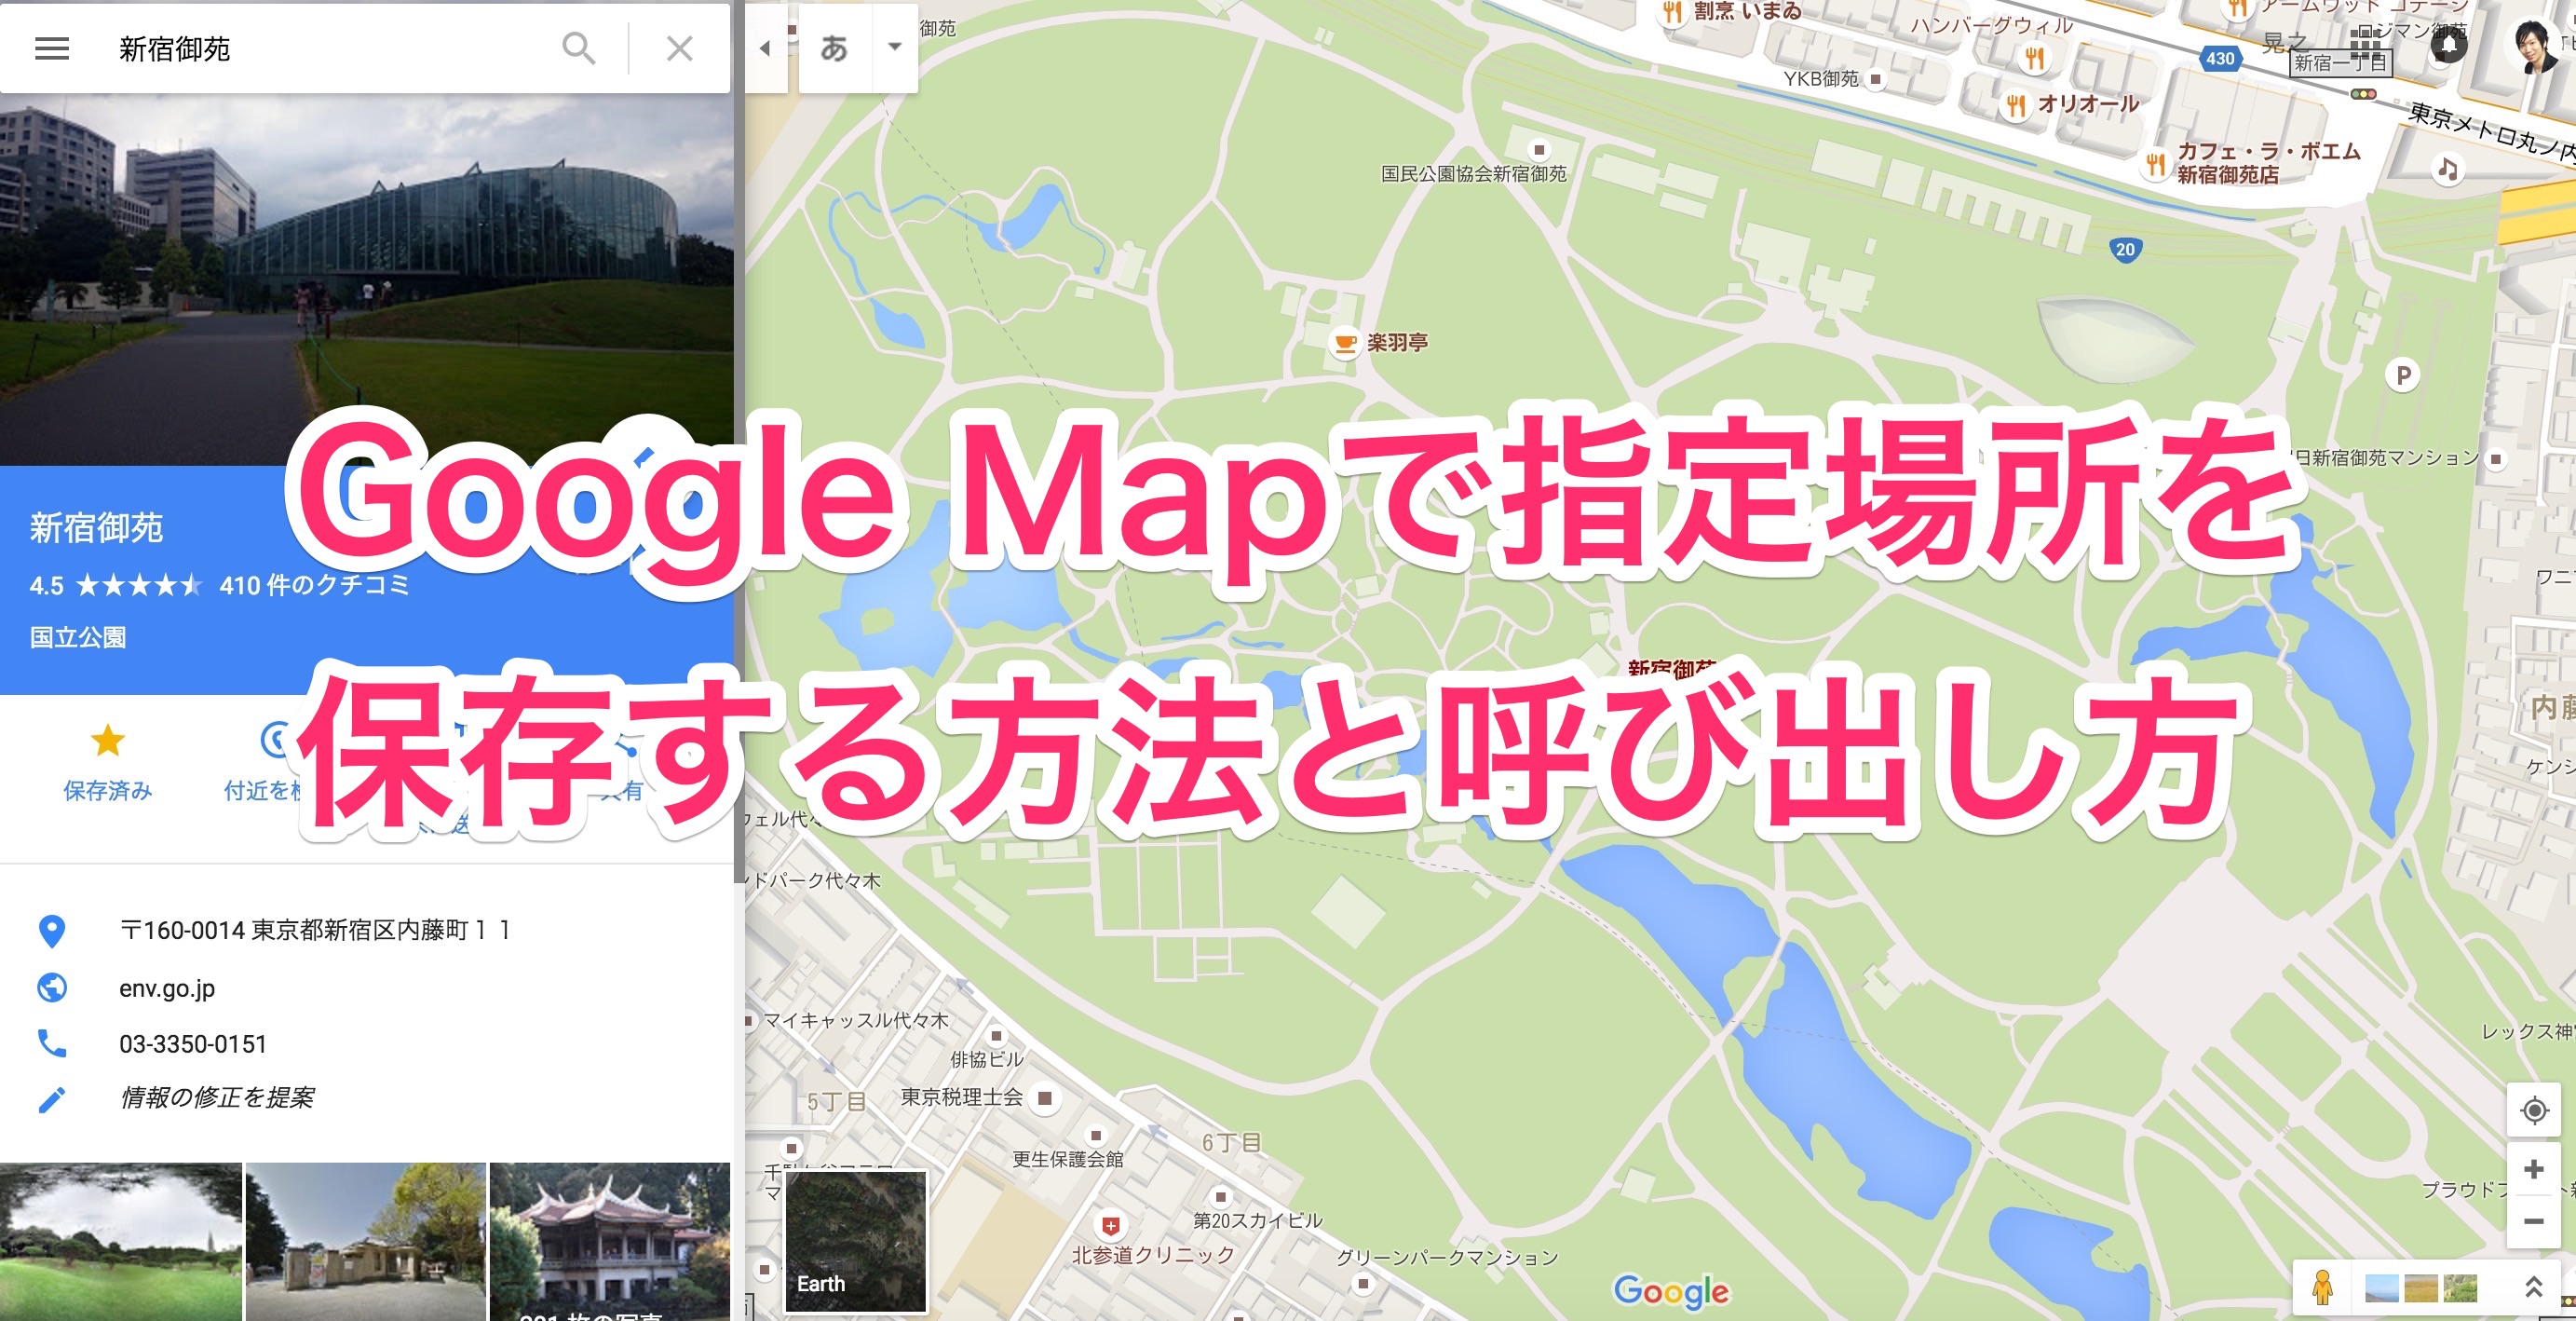 グーグルマップで指定場所を保存する方法と呼び出し方 パソニュー